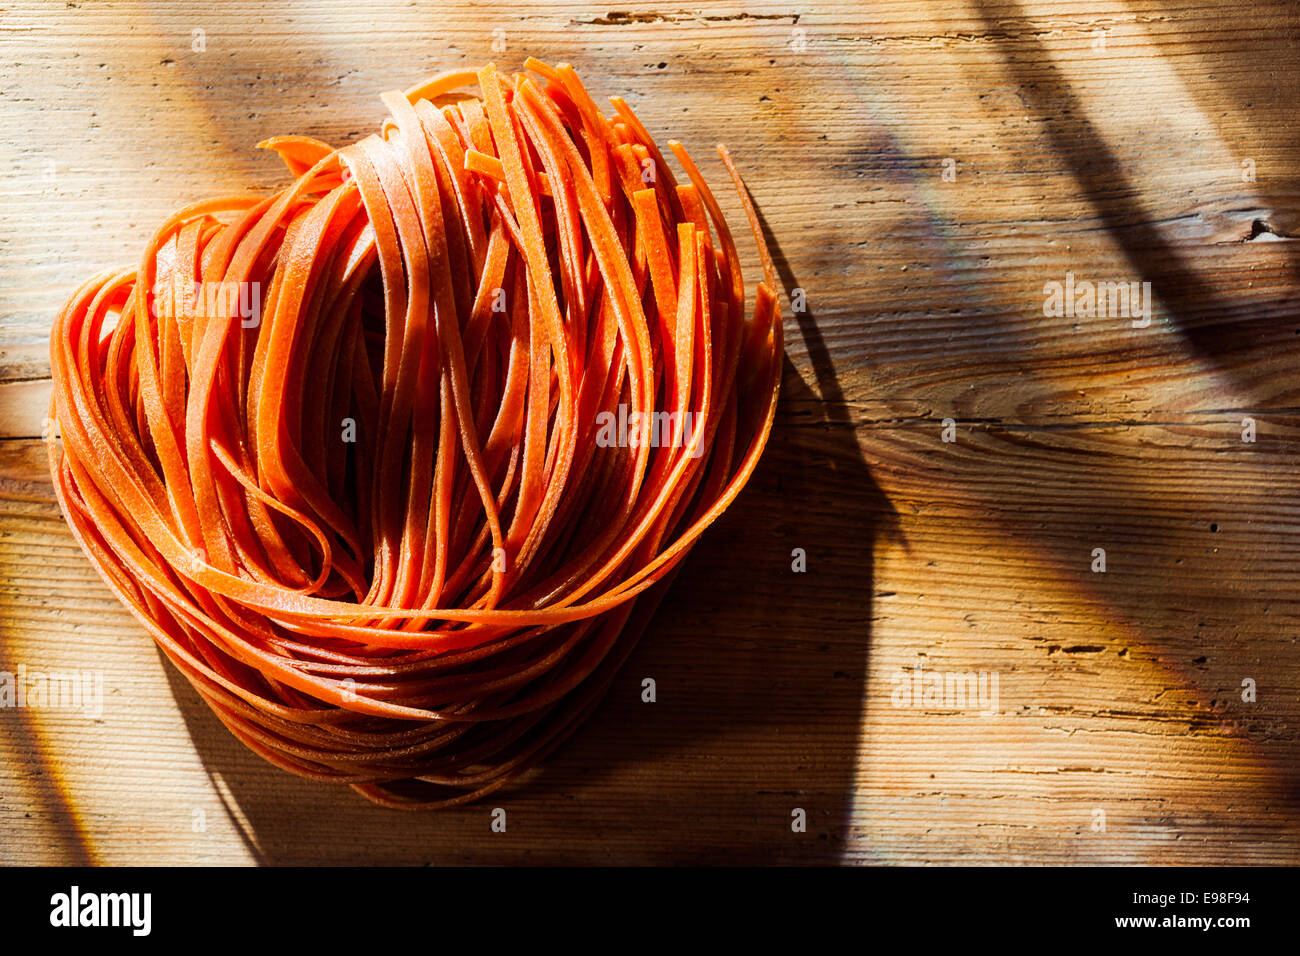 Tomaten gewürzt Linguine oder Tagliatelle Nudeln liegend auf einem Holztisch im Sonnenlicht, die darauf warten, für ein traditionelles italienisches Nudelgericht mit Exemplar gekocht werden Stockfoto